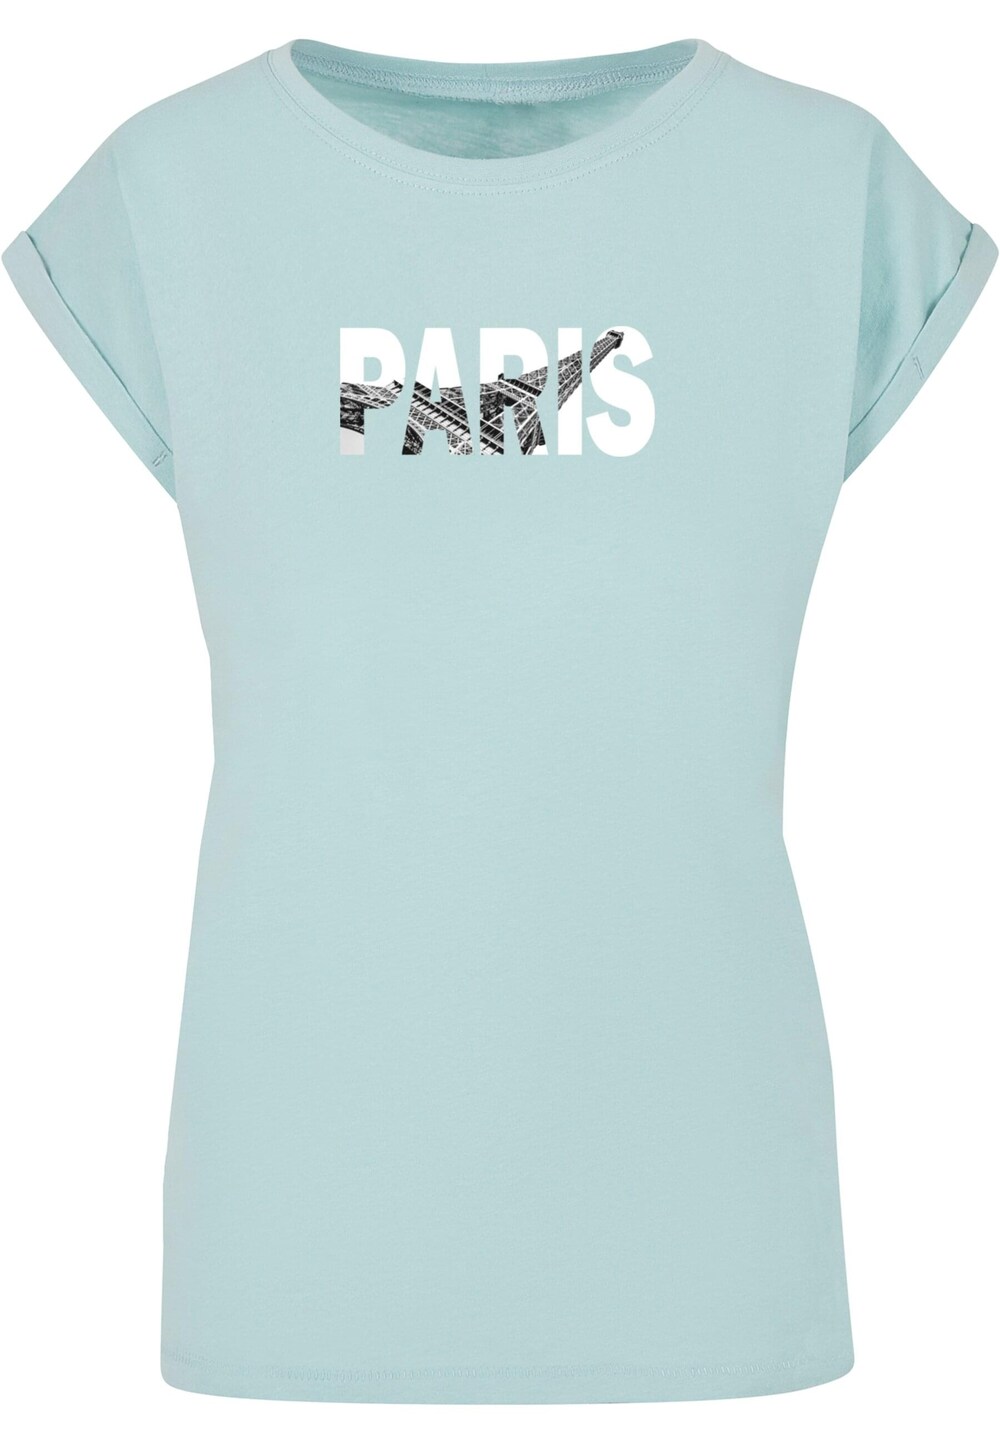 Рубашка Merchcode Paris Eiffel Tower, светло-синий